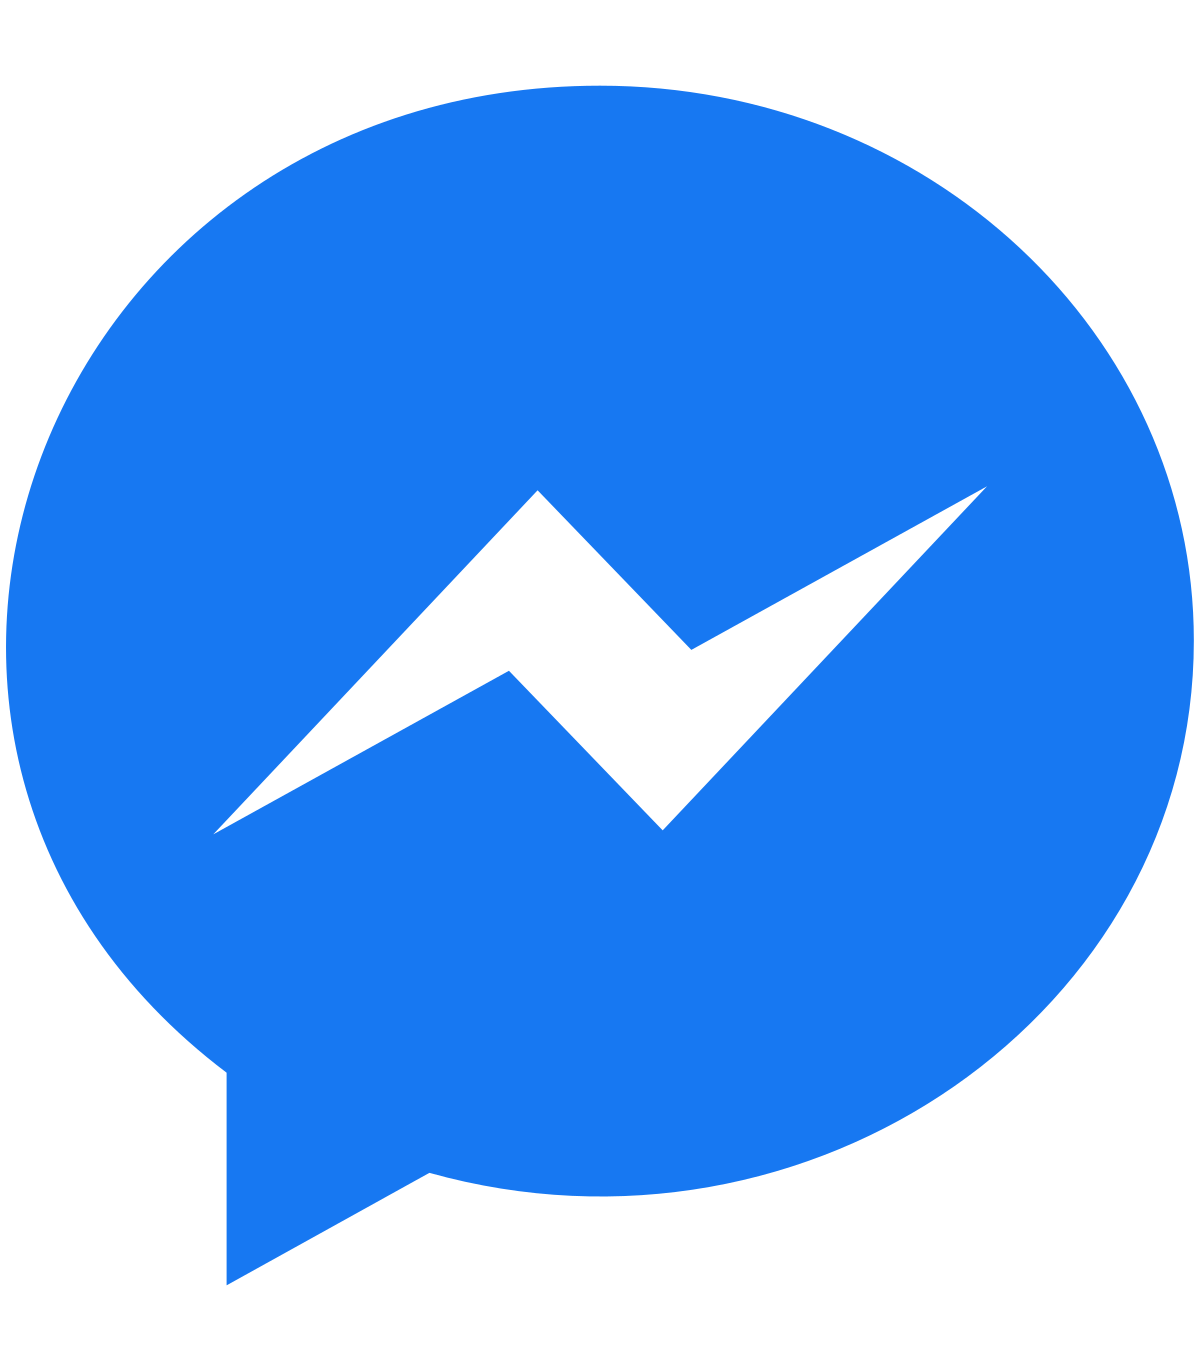 Facebook Messenger đã cập nhật mới màu sắc icon mang đến cho người dùng trải nghiệm tốt hơn. Bạn có thể thấy rõ sự thay đổi của họ với sự thay đổi màu sắc tiên tiến đang trở nên phổ biến hiện nay. Hãy tải ảnh liên quan tại đây để thấy cách icon Messenger trông hoàn toàn mới mẻ và hơn nữa là vui nhộn hơn!